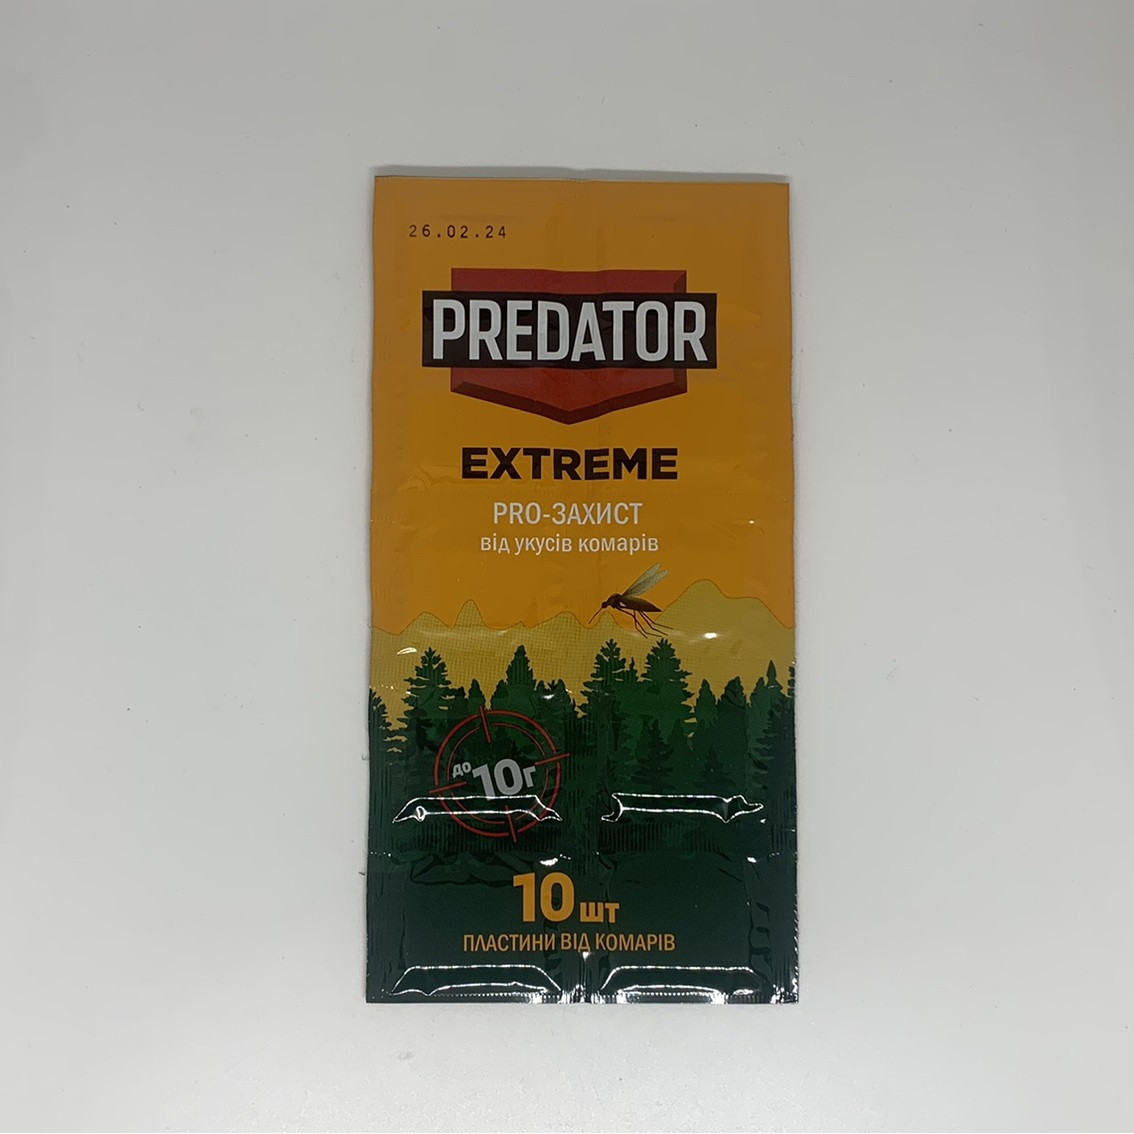 "PREDATOR EXTREME" пластини від комарів 10 шт. до 10 години захисту